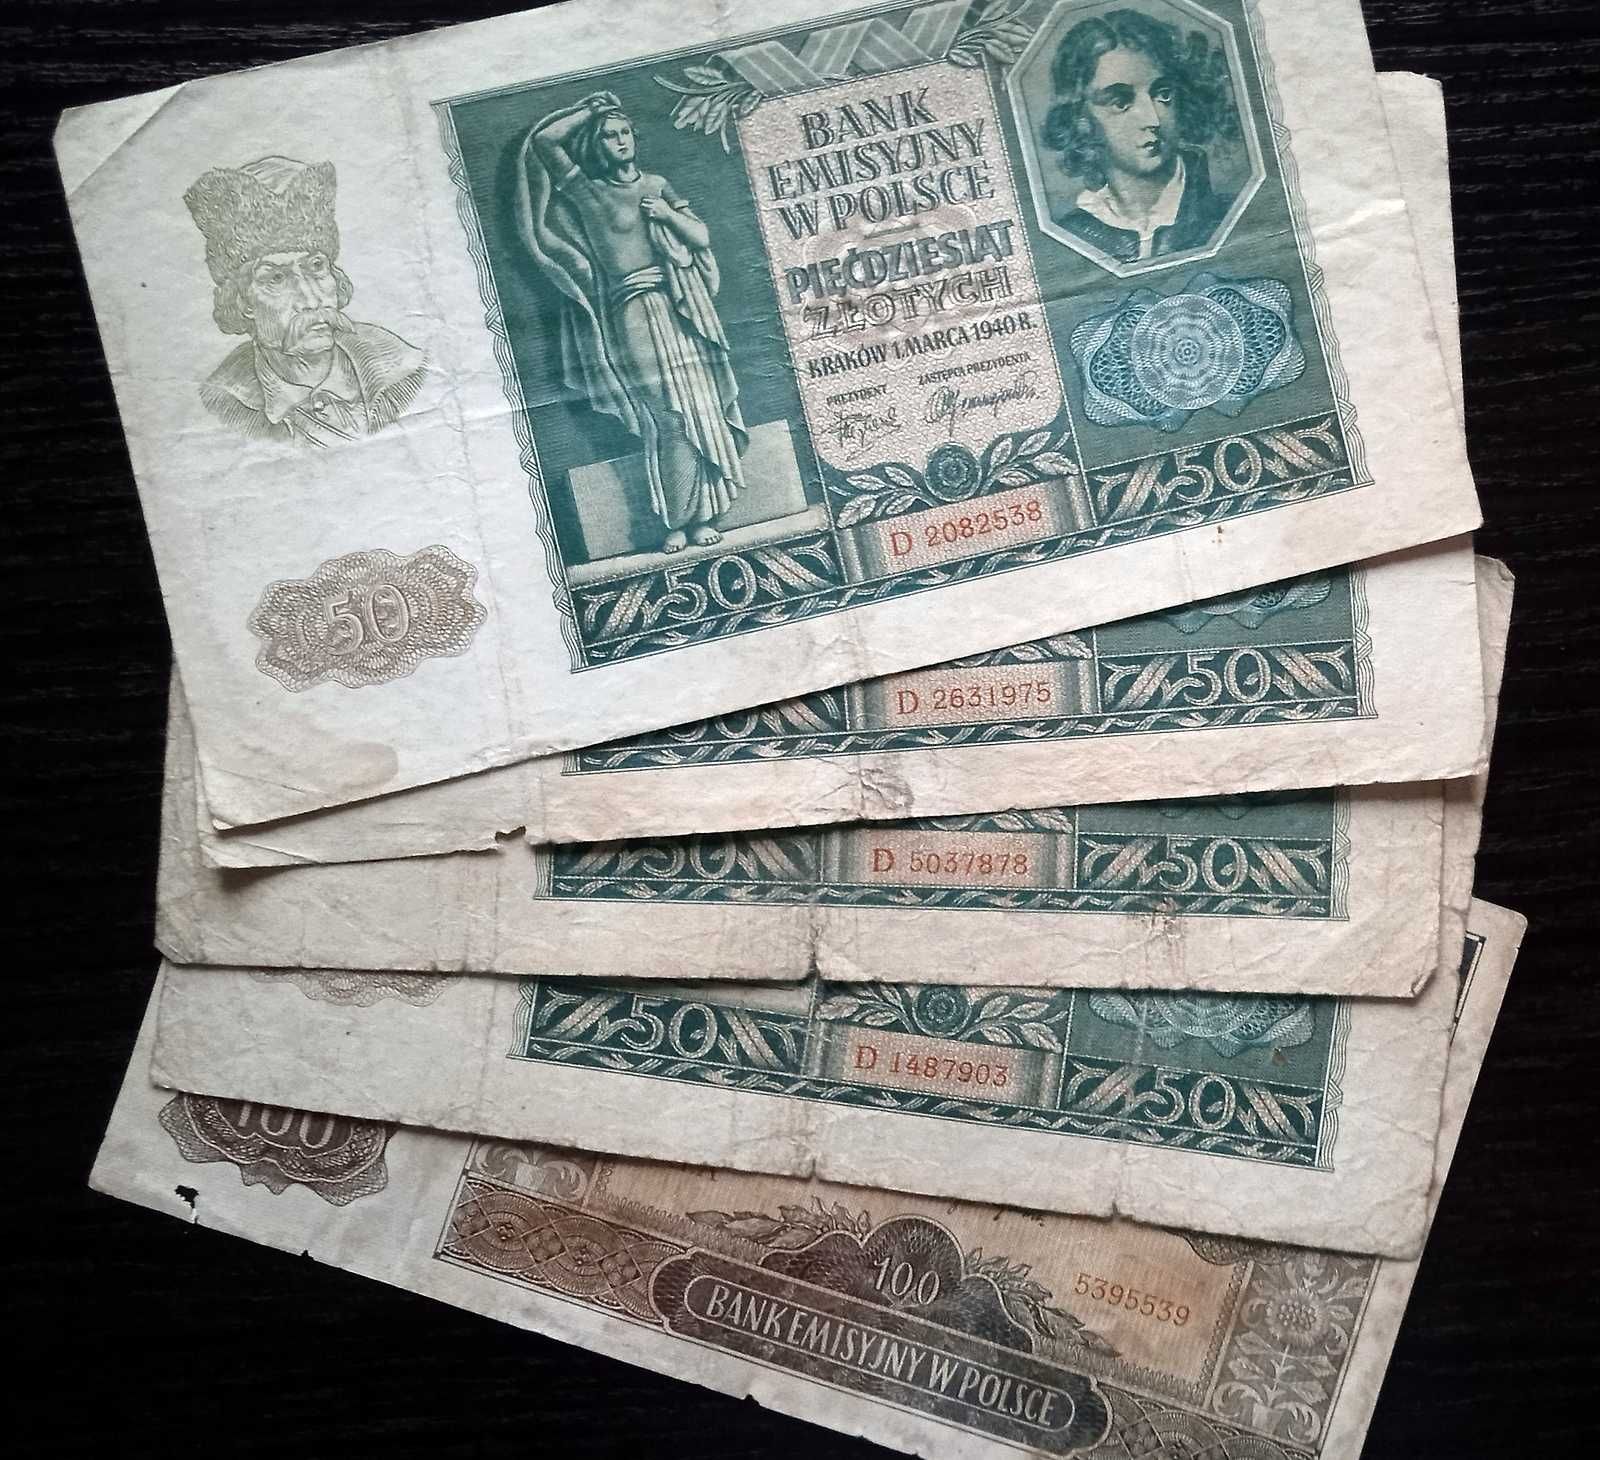 Banknoty Polskie